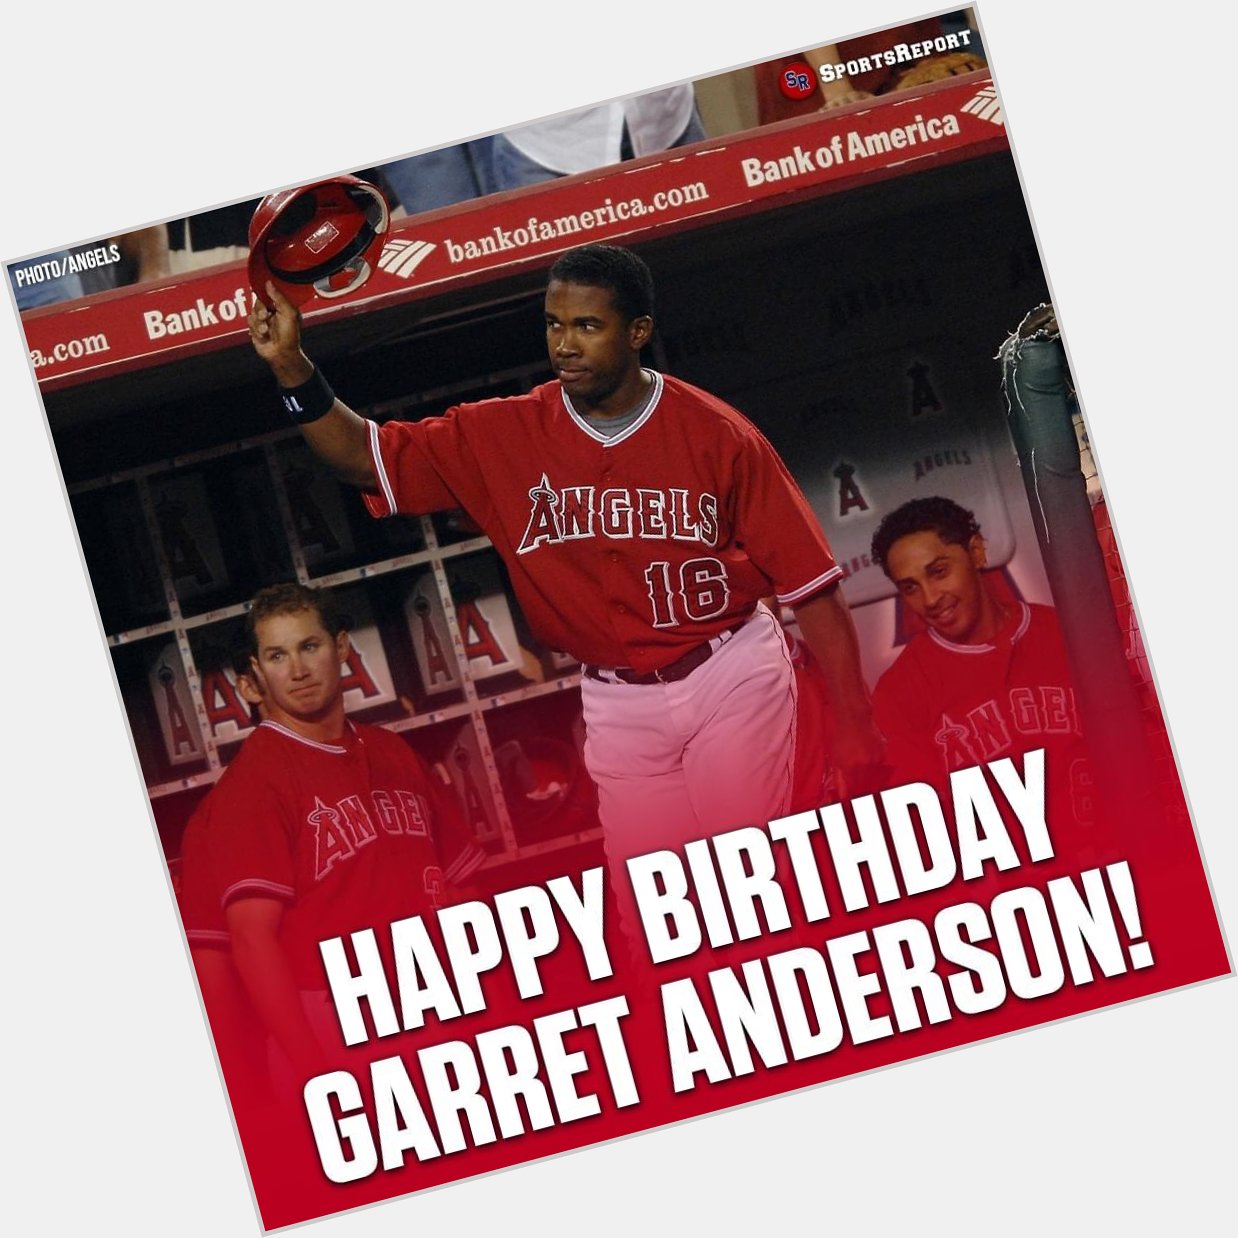 Happy birthday Garret Anderson 